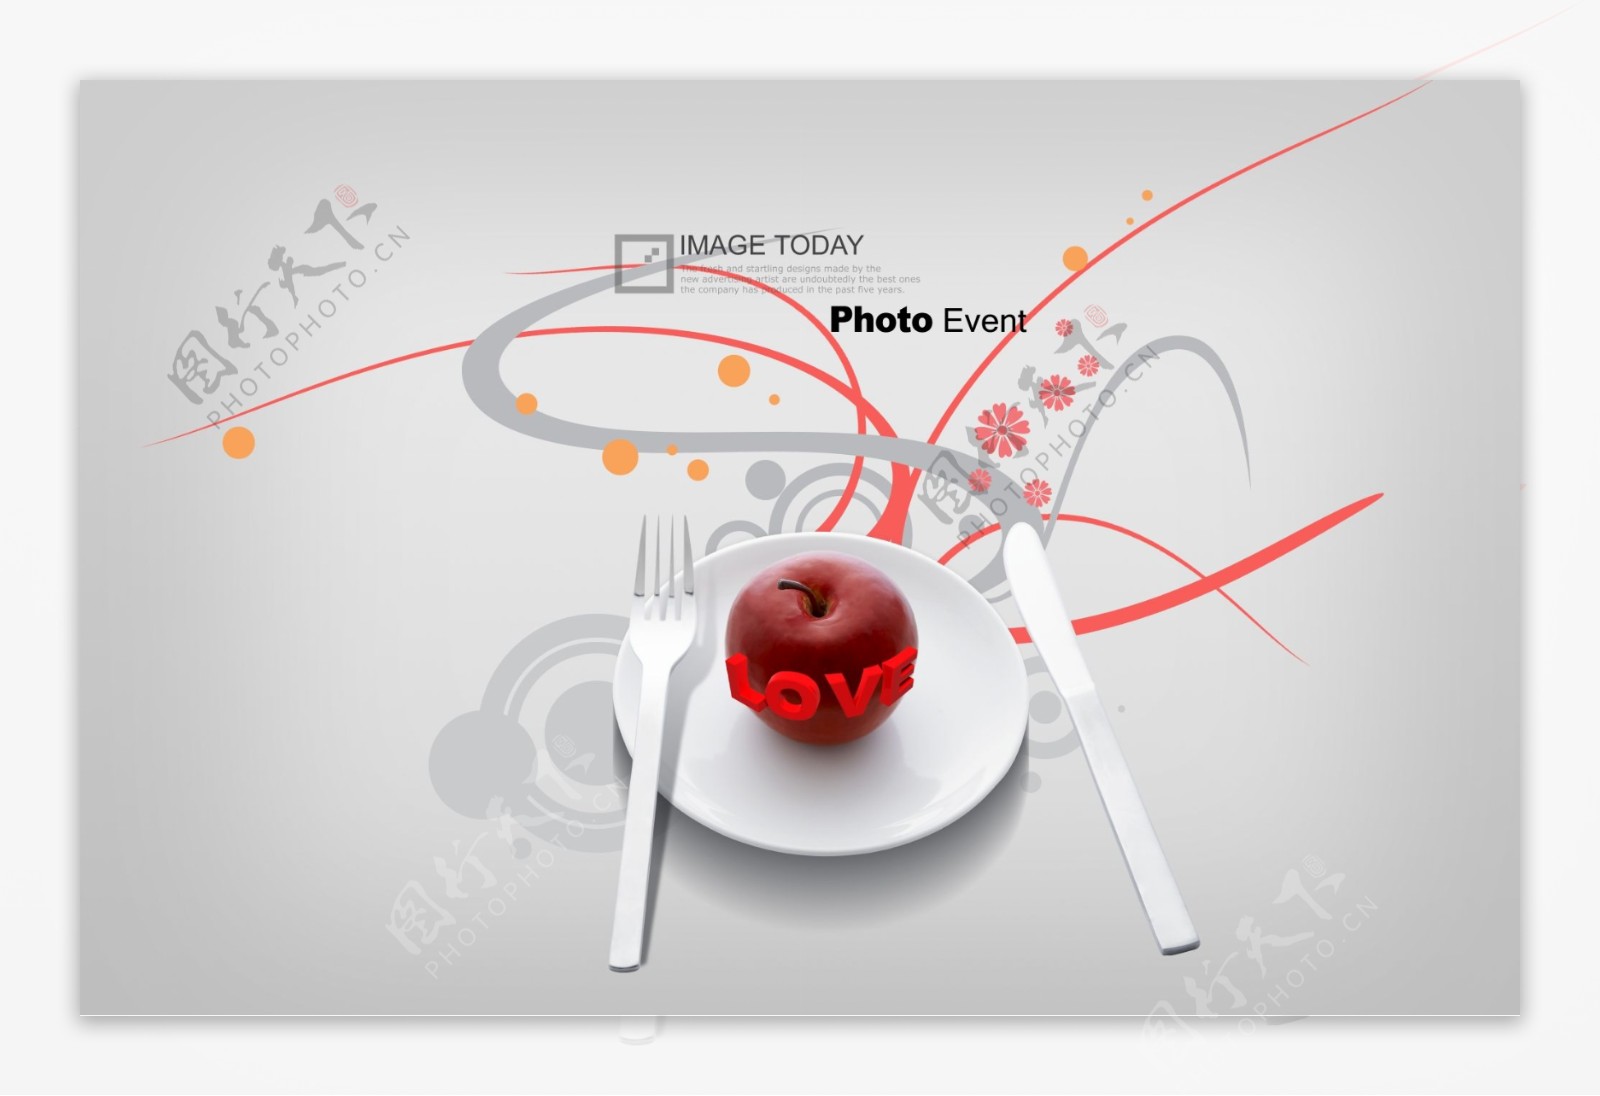 盘子内的刀叉和红苹果